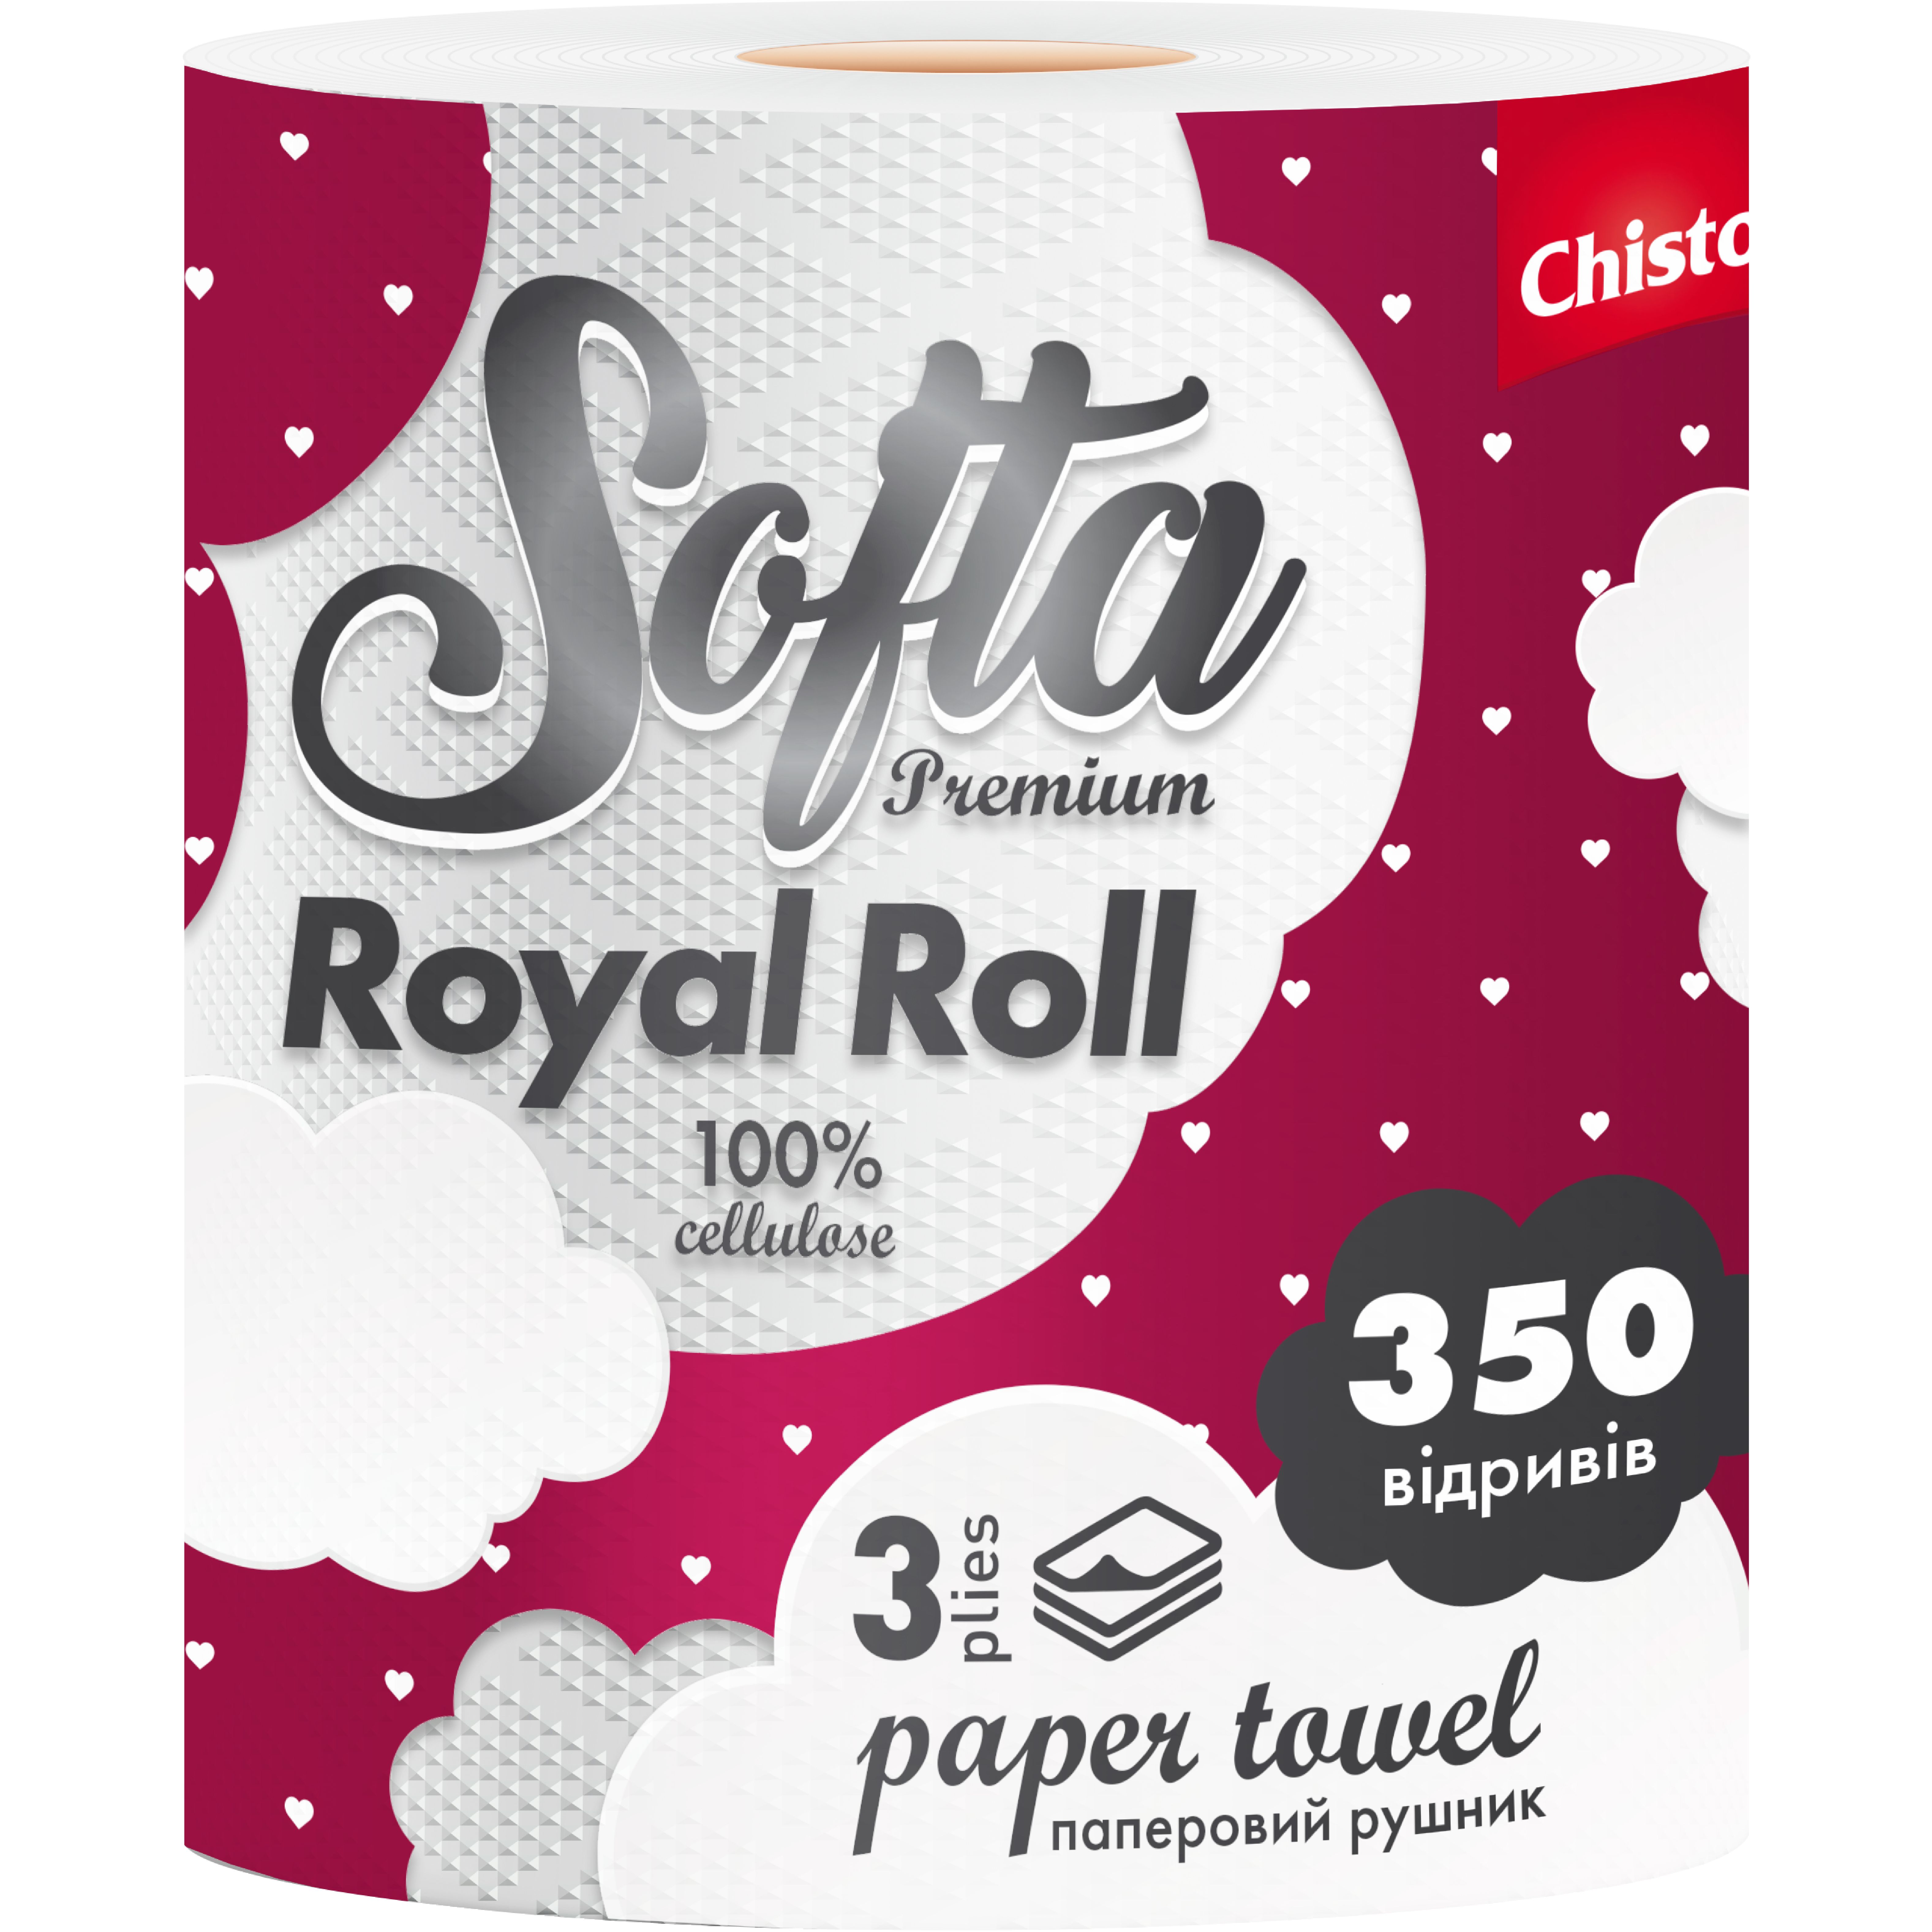 Бумажные полотенца Chisto Softa Royl Roll на гильзе трехслойные 350 отрывов 1 рулон - фото 1